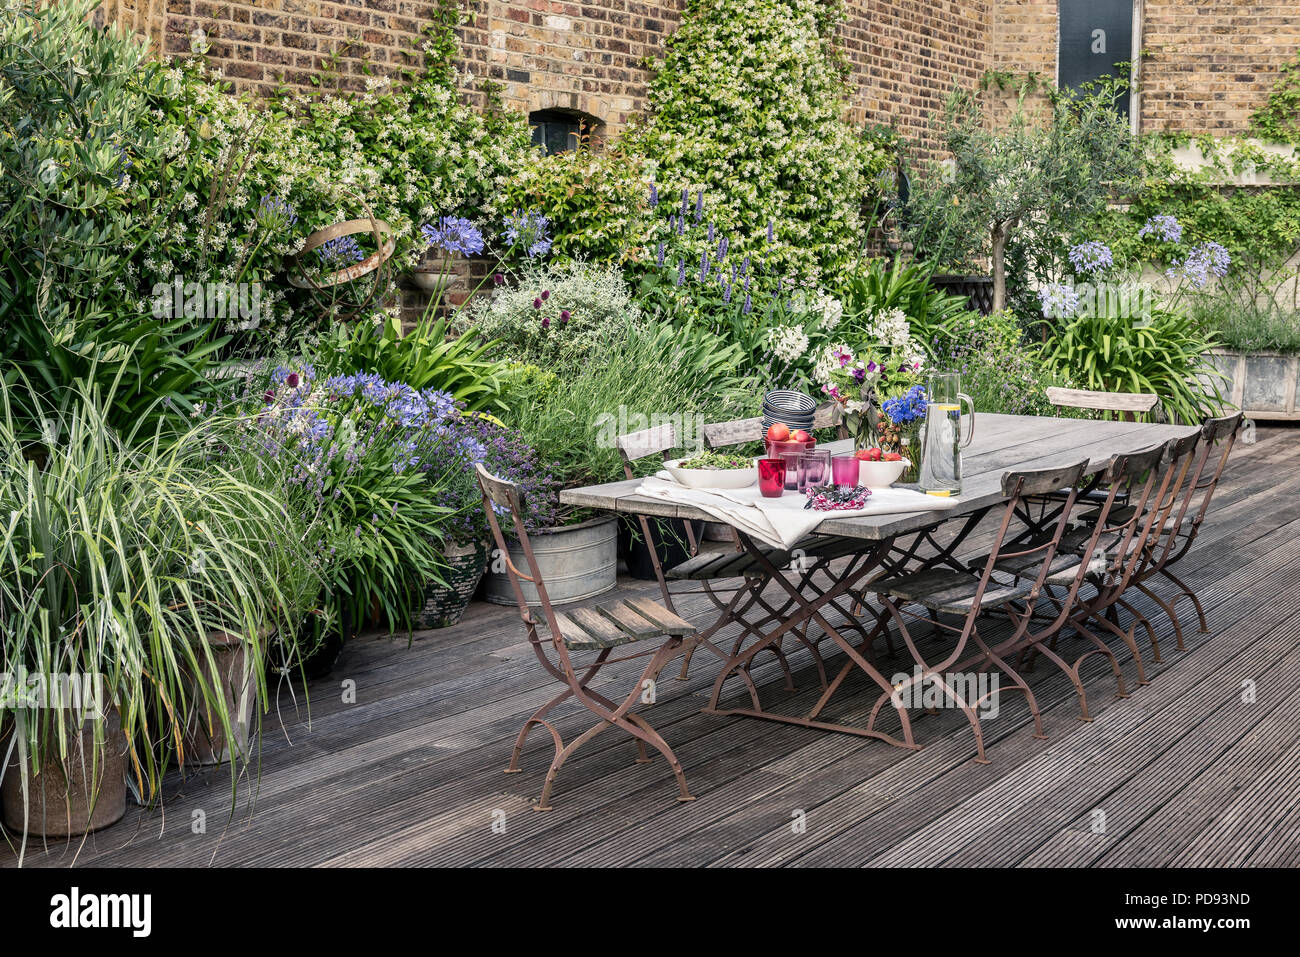 Chaises de bistrot ancien français autour de longues tables en bois sur un toit-terrasse avec meubles de jardin. Agapanthus et Jasmine s'épanouit dans l'arrière-plan Banque D'Images